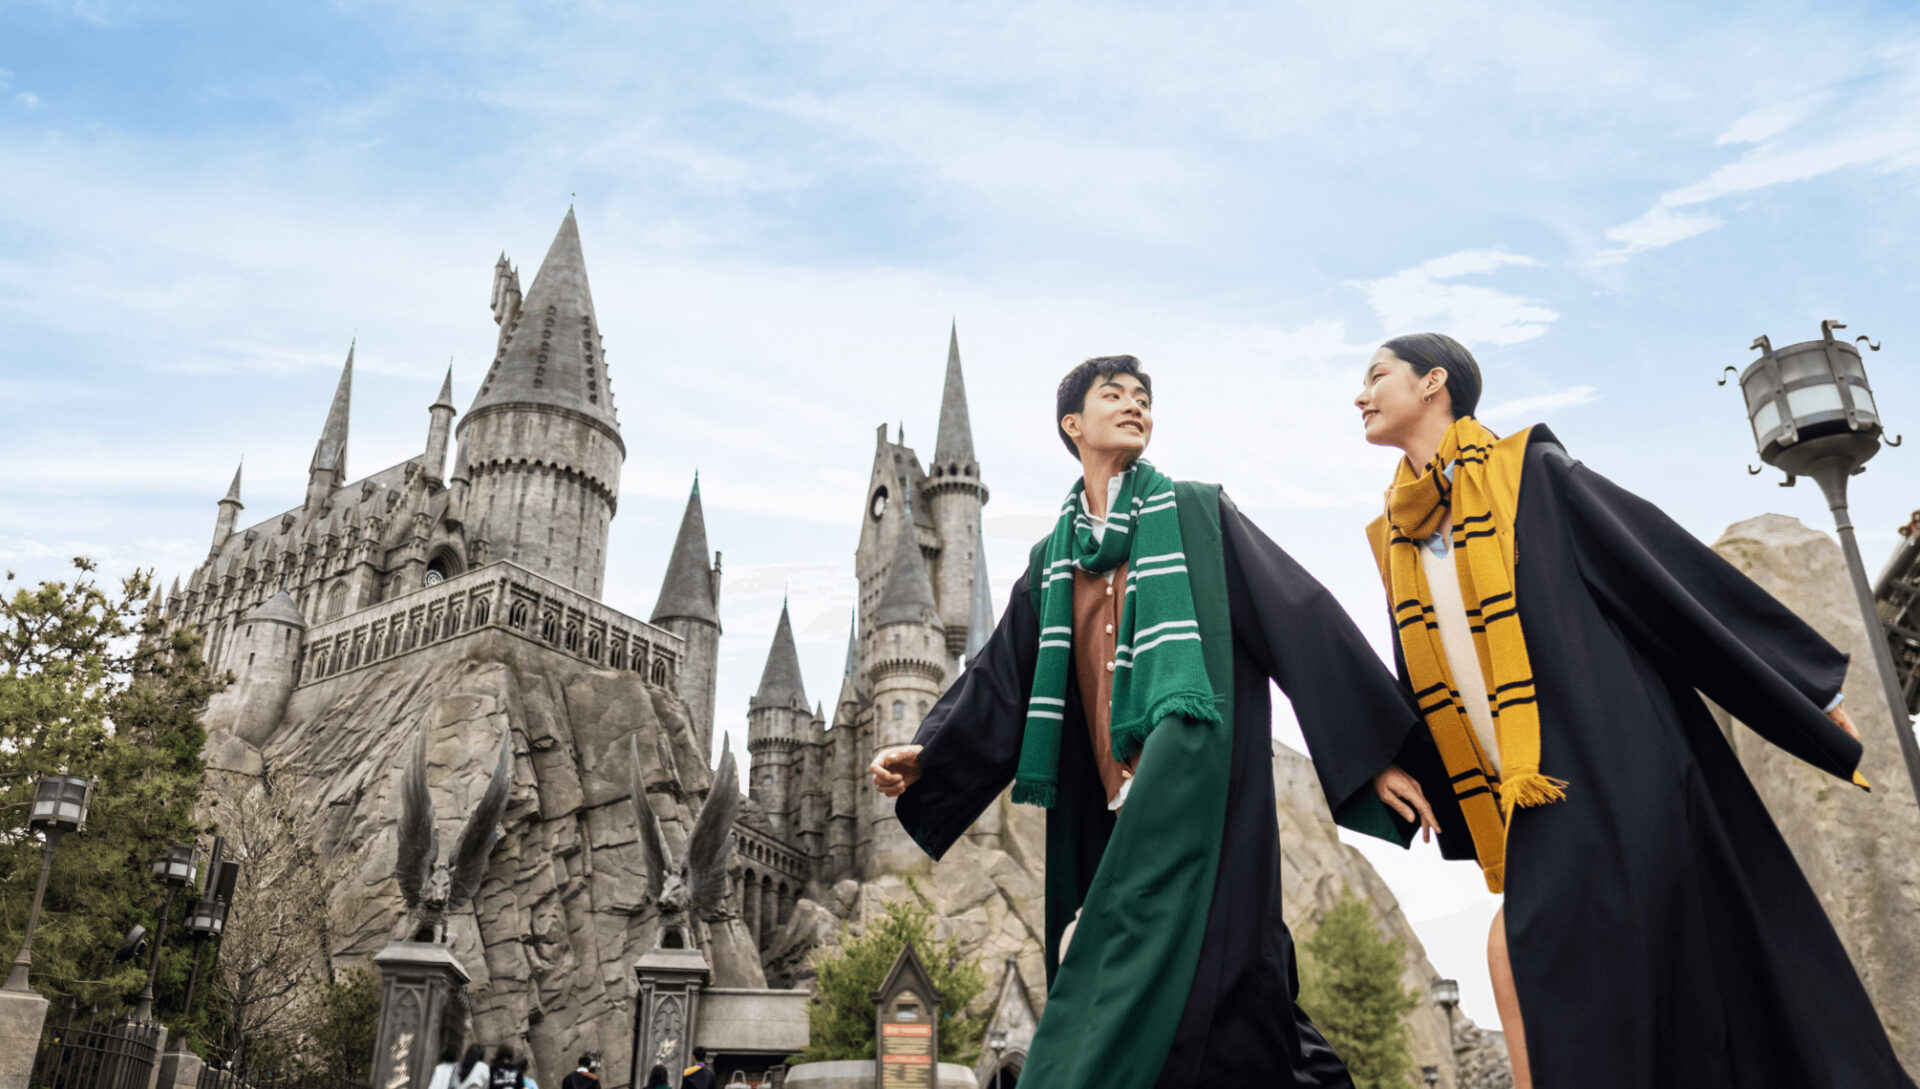 Atrações de Harry Potter em Orlando - Grupo Dicas